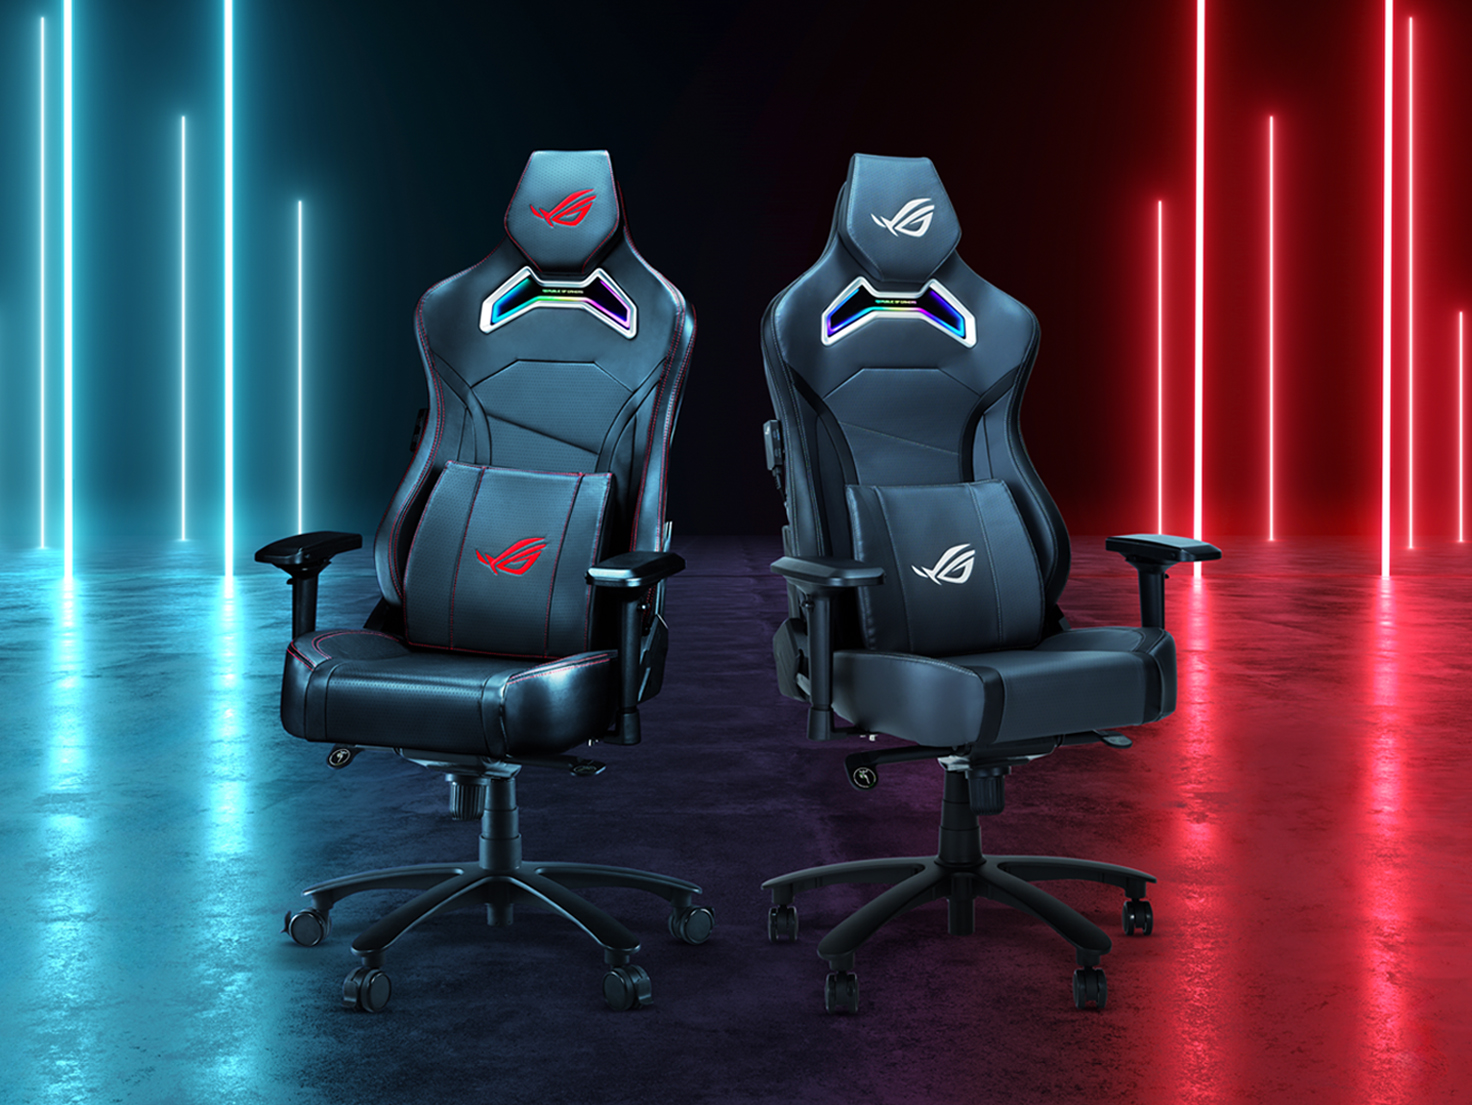 Deux chaises gaming Chariot X en noir et gris côte à côte.